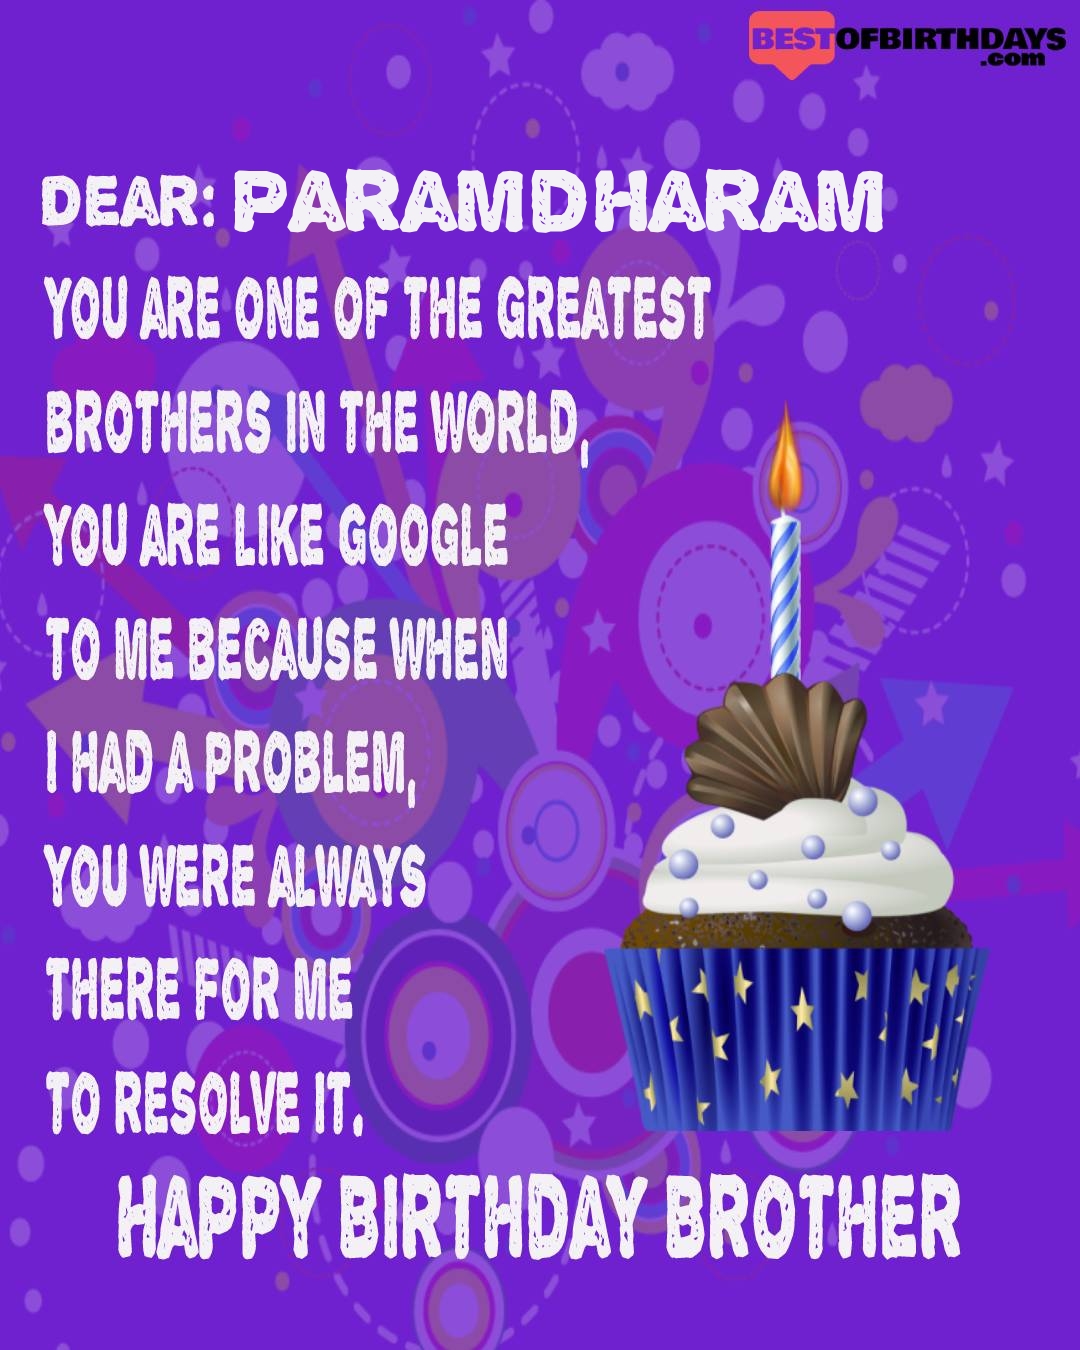 Happy birthday paramdharam bhai brother bro